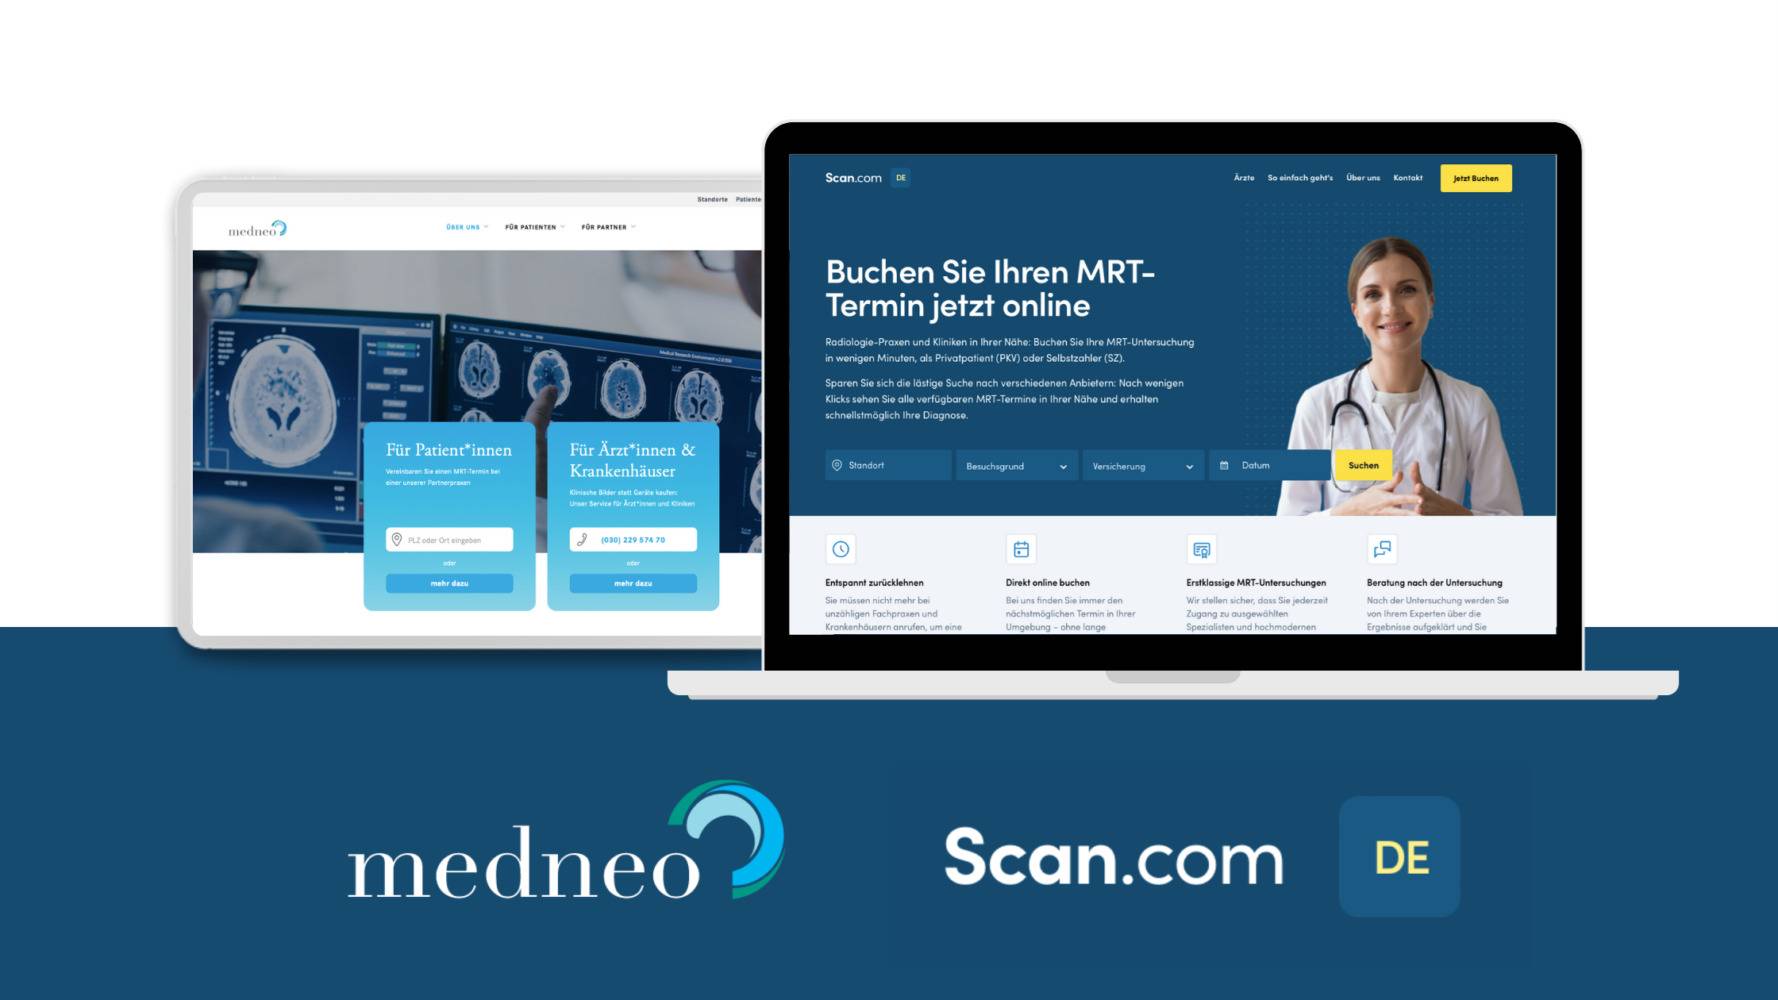 Scan.com kooperiert mit medneo